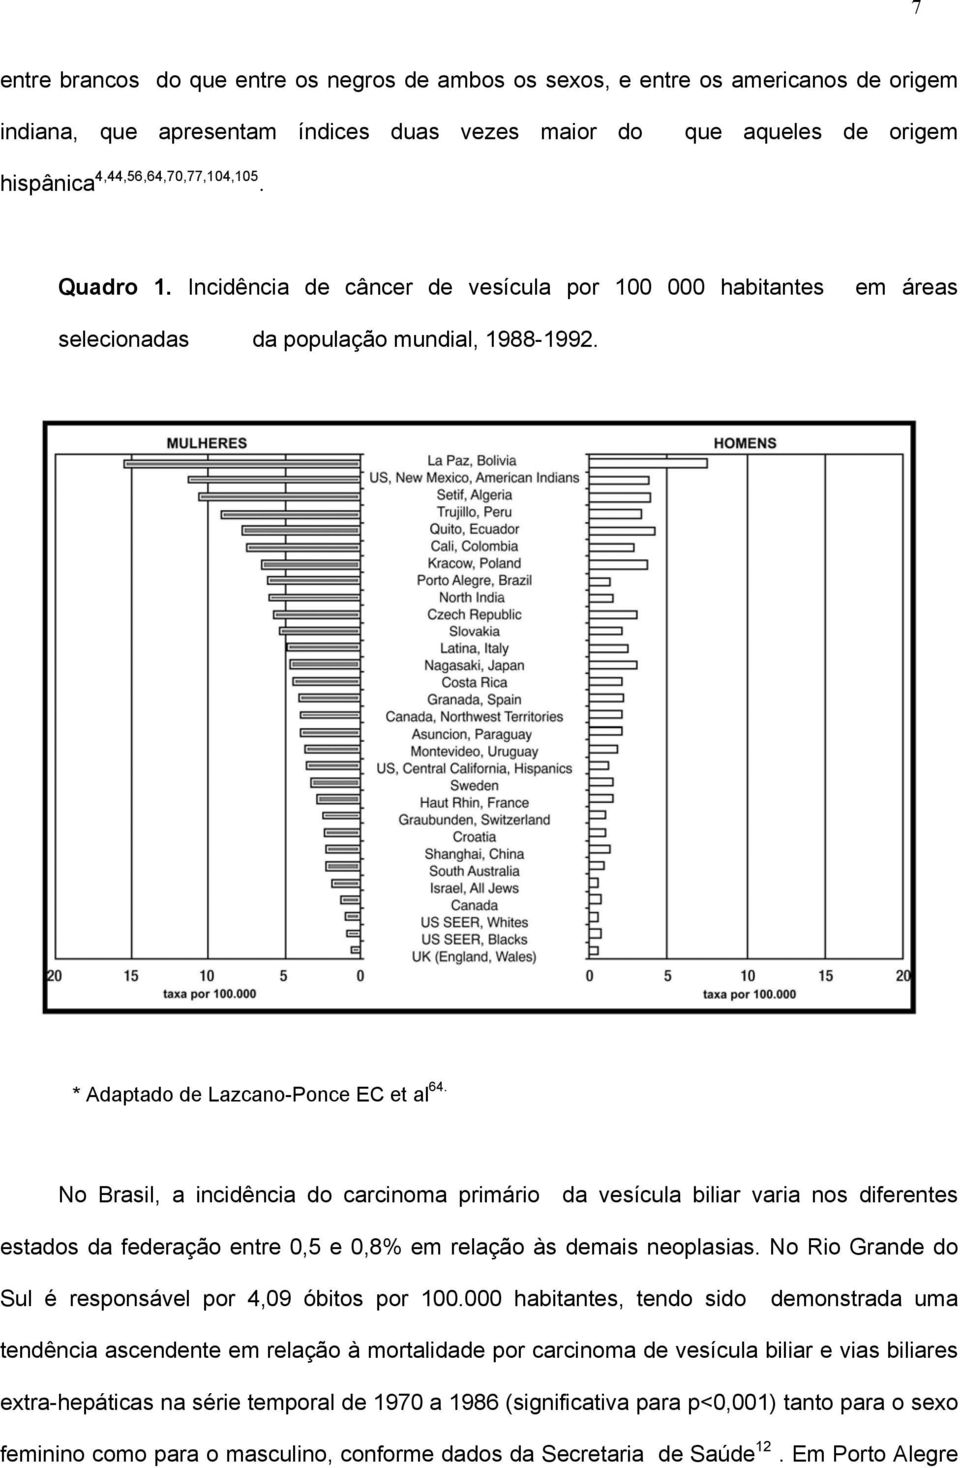 No Brasil, a incidência do carcinoma primário da vesícula biliar varia nos diferentes estados da federação entre 0,5 e 0,8% em relação às demais neoplasias.